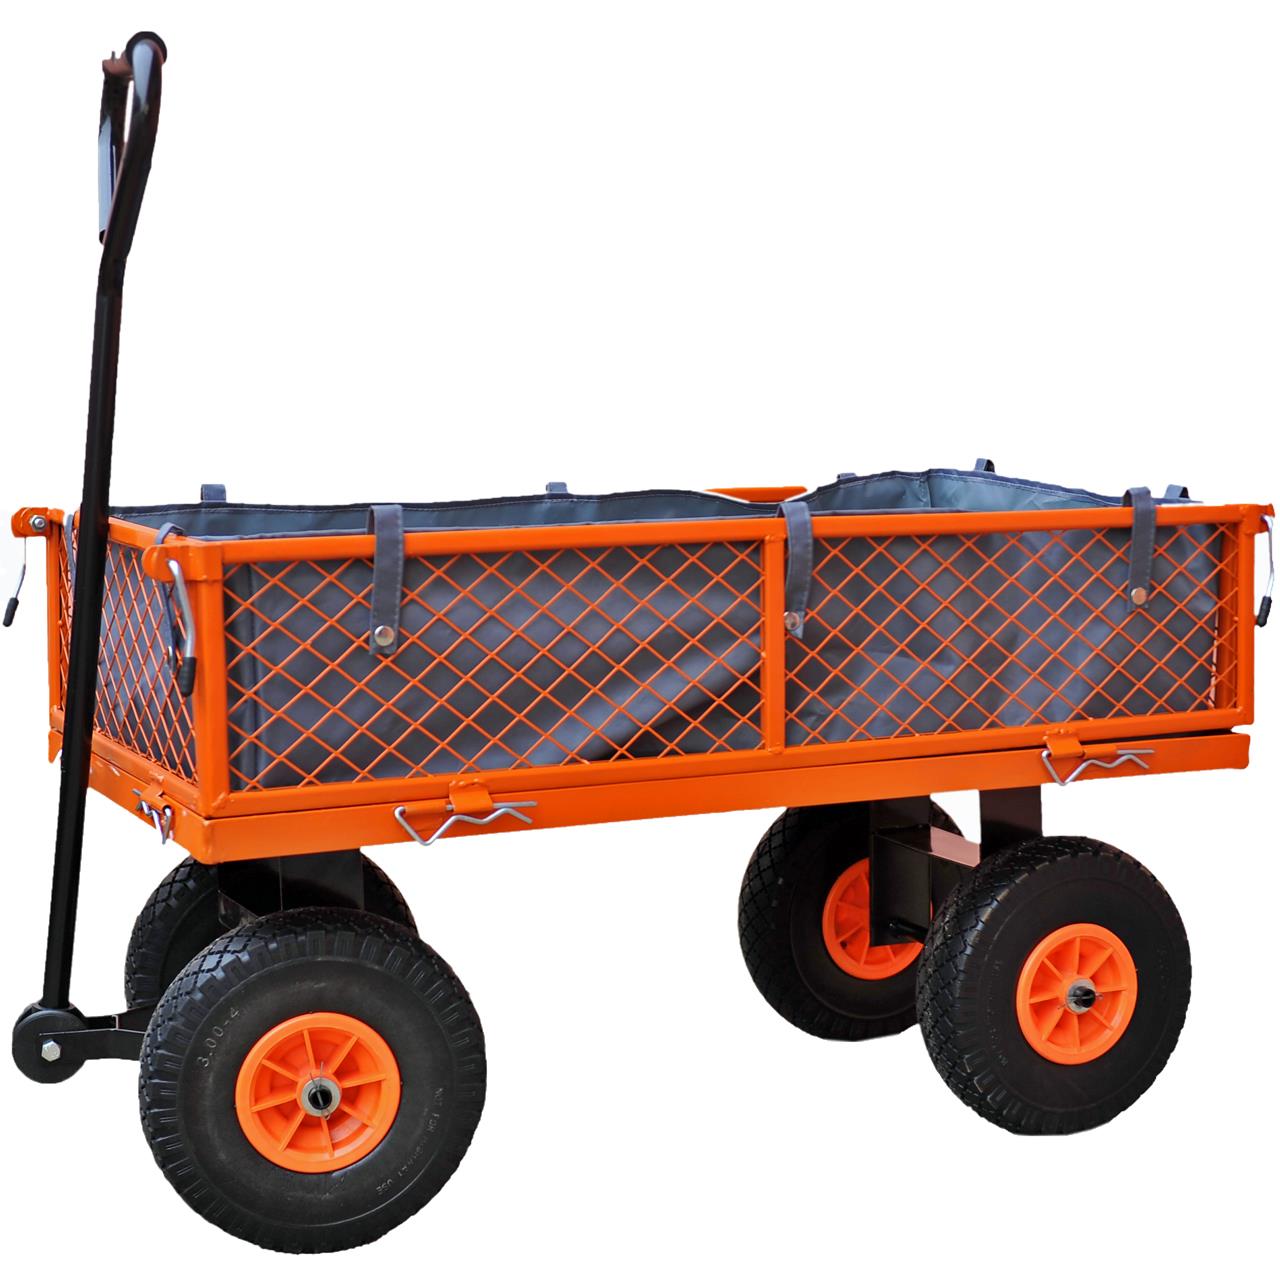 FUXTEC garden equipment trolley / hand cart FX-GW350